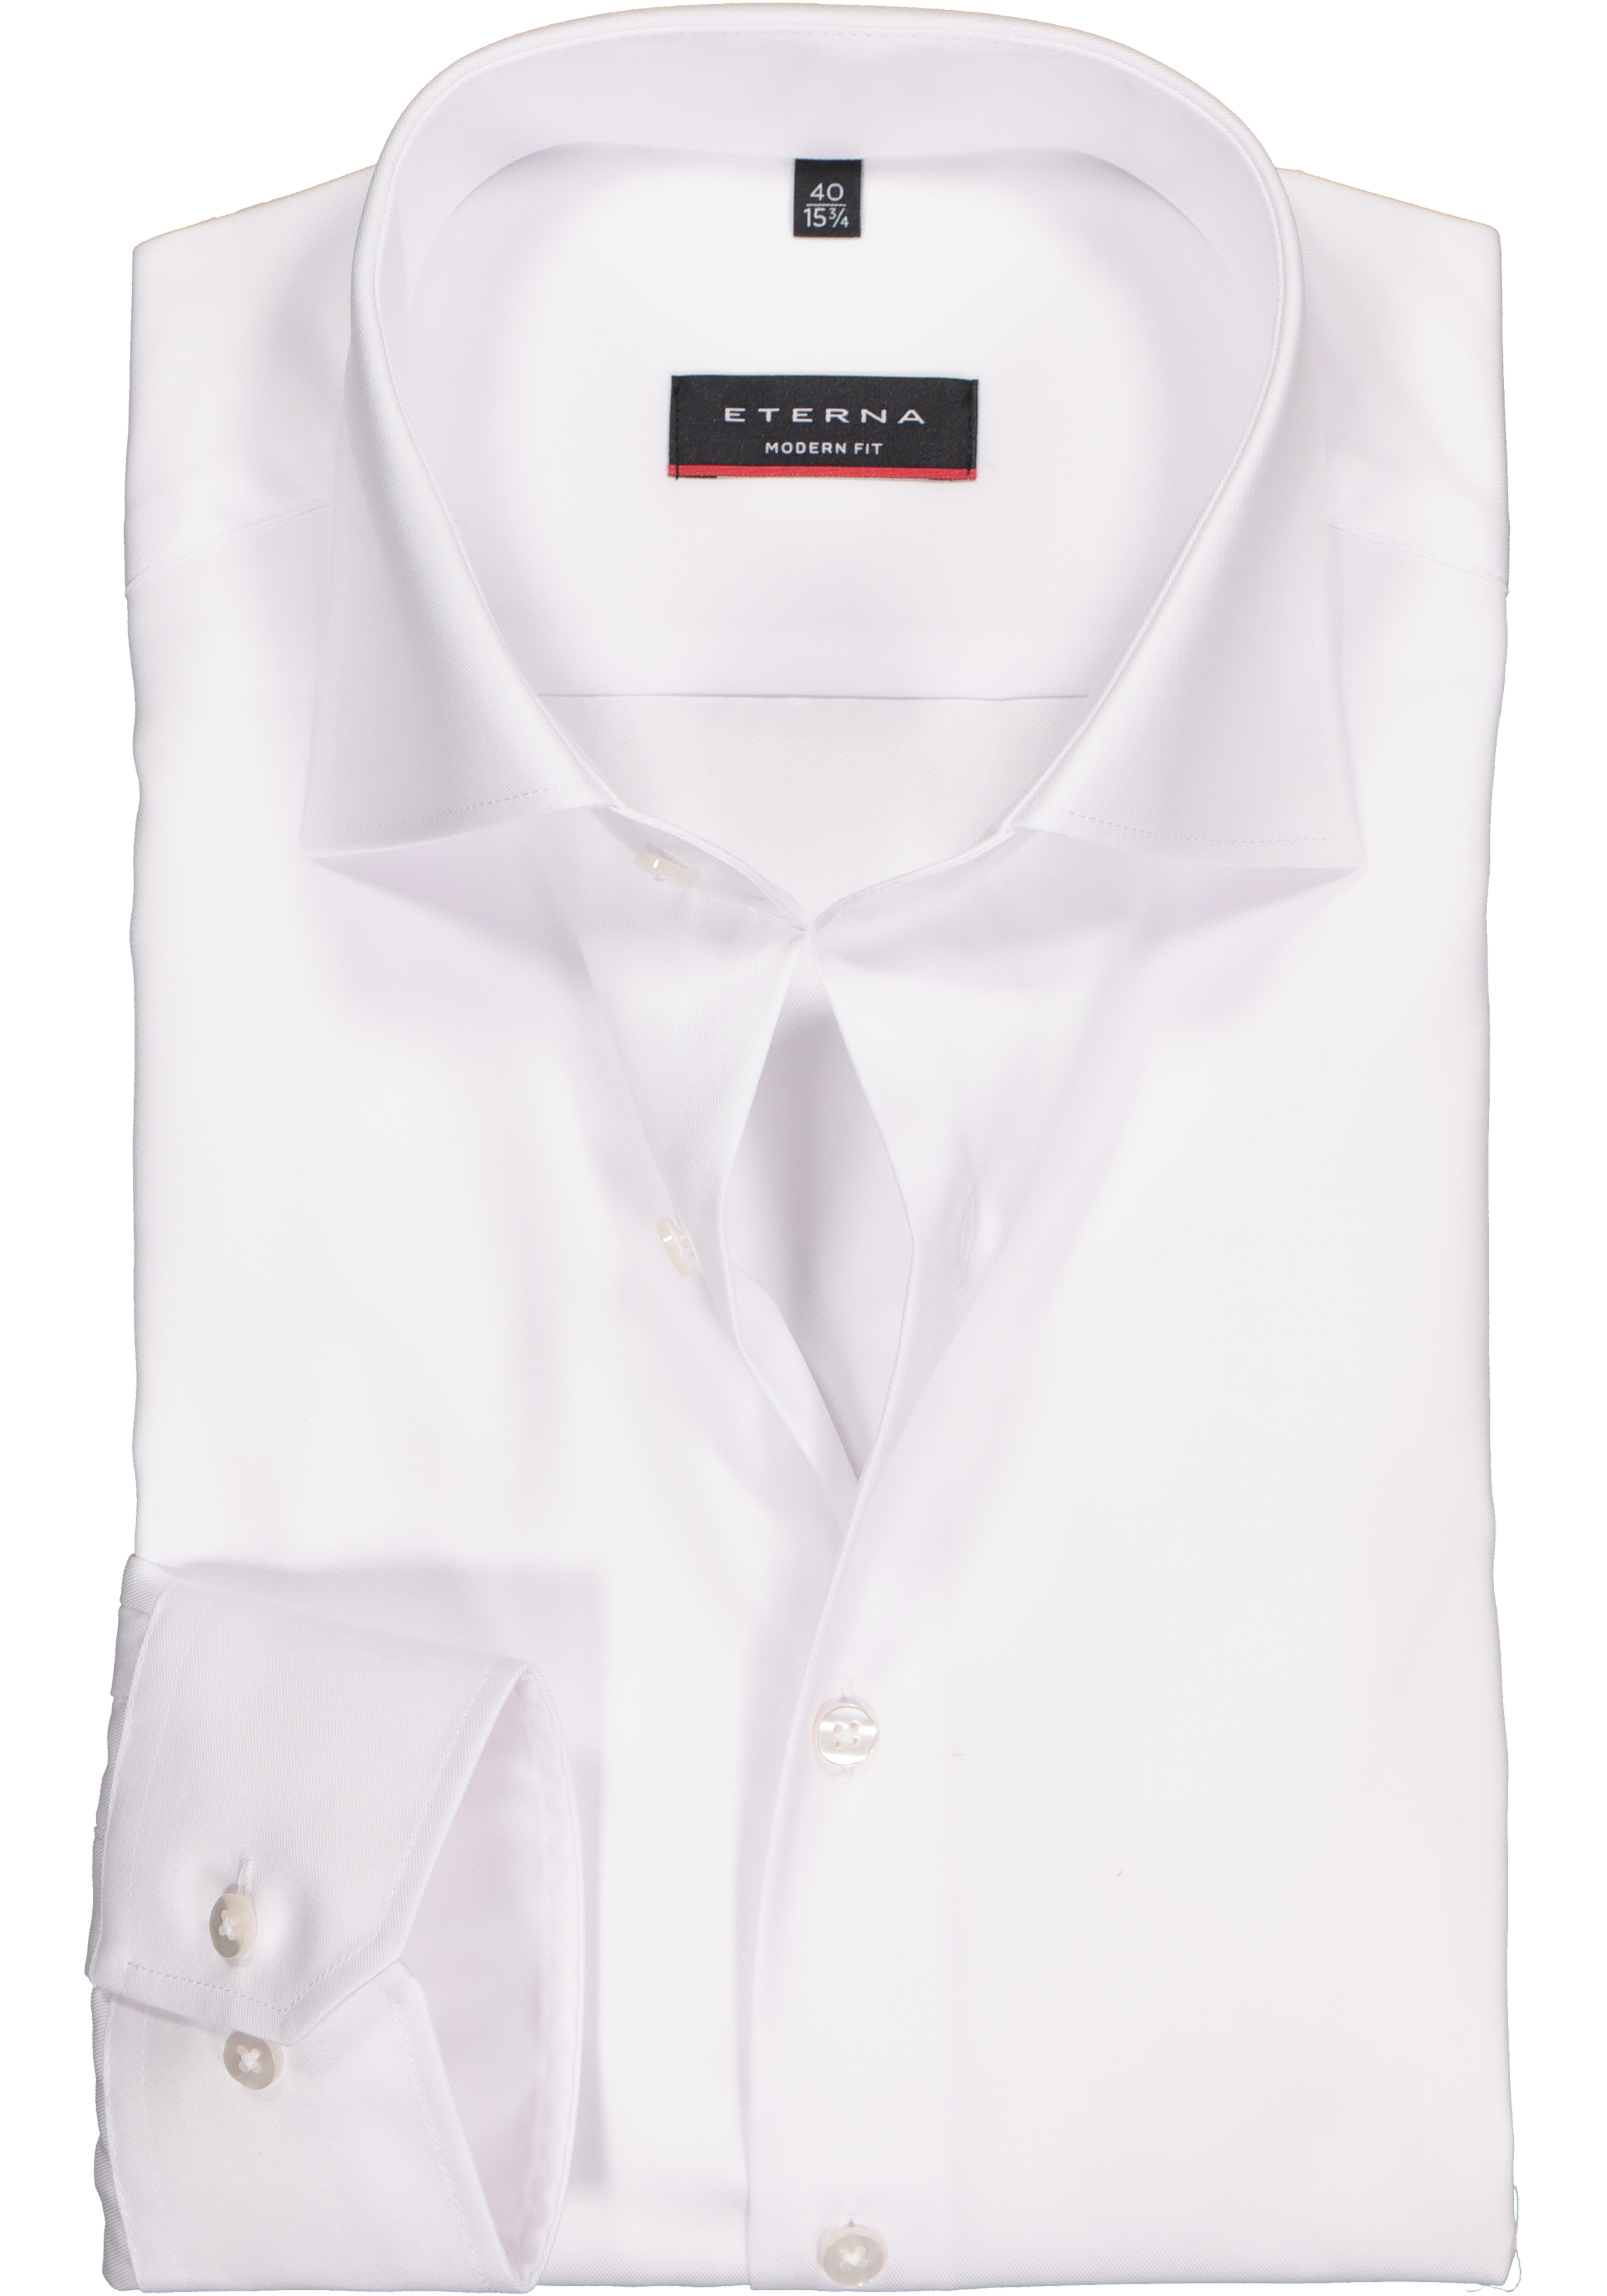 Universeel banner JEP ETERNA modern fit overhemd, mouwlengte 72 cm, niet doorschijnend twill... -  Zomer SALE tot 50% korting